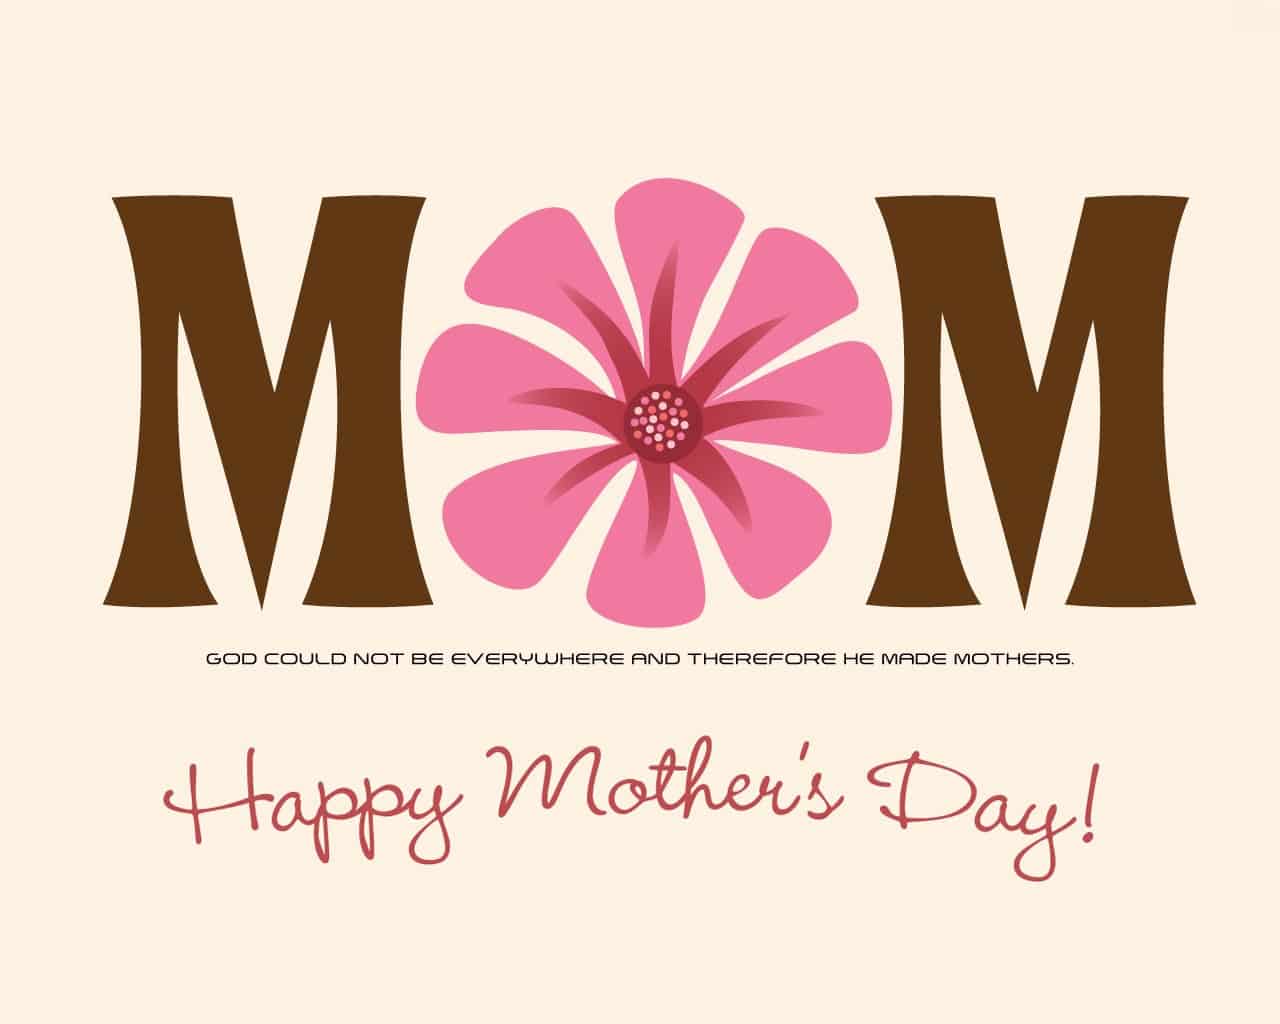 صور وكروت وبطاقات معايدة لعيد الأم - Happy Mother's Day 2020 8